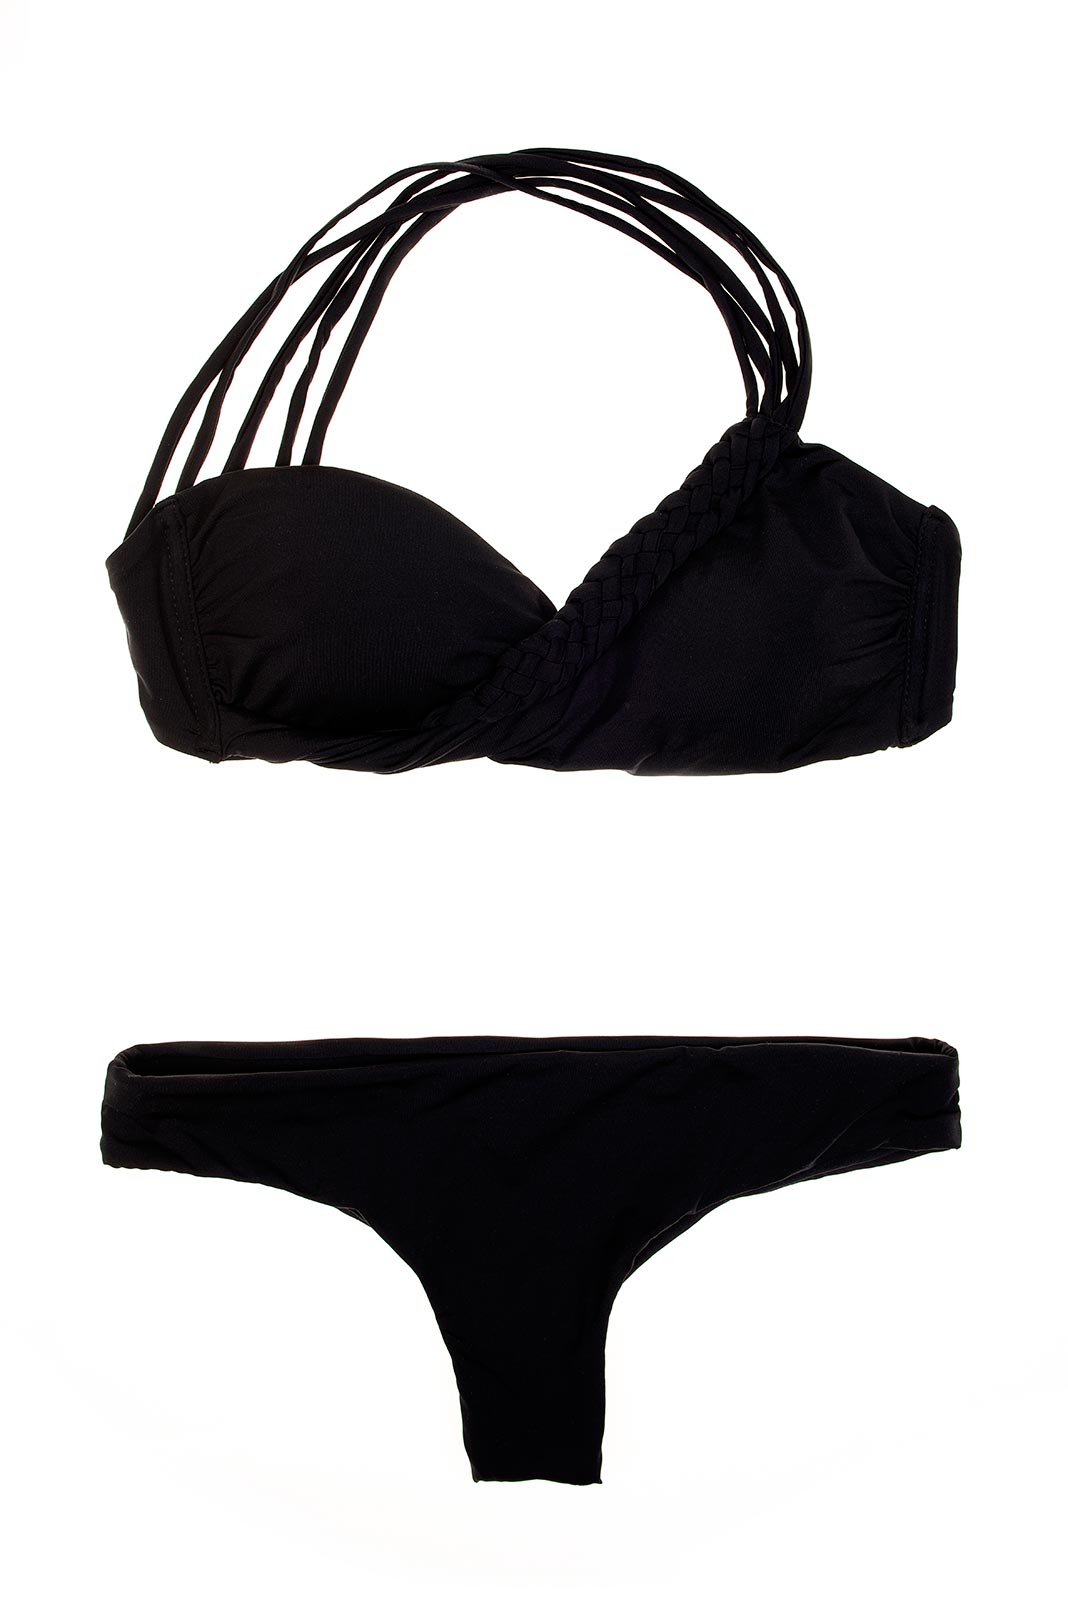 Asymmetric Black Brazilian Bikini, Plaited Single Strap Bandeau Top ...